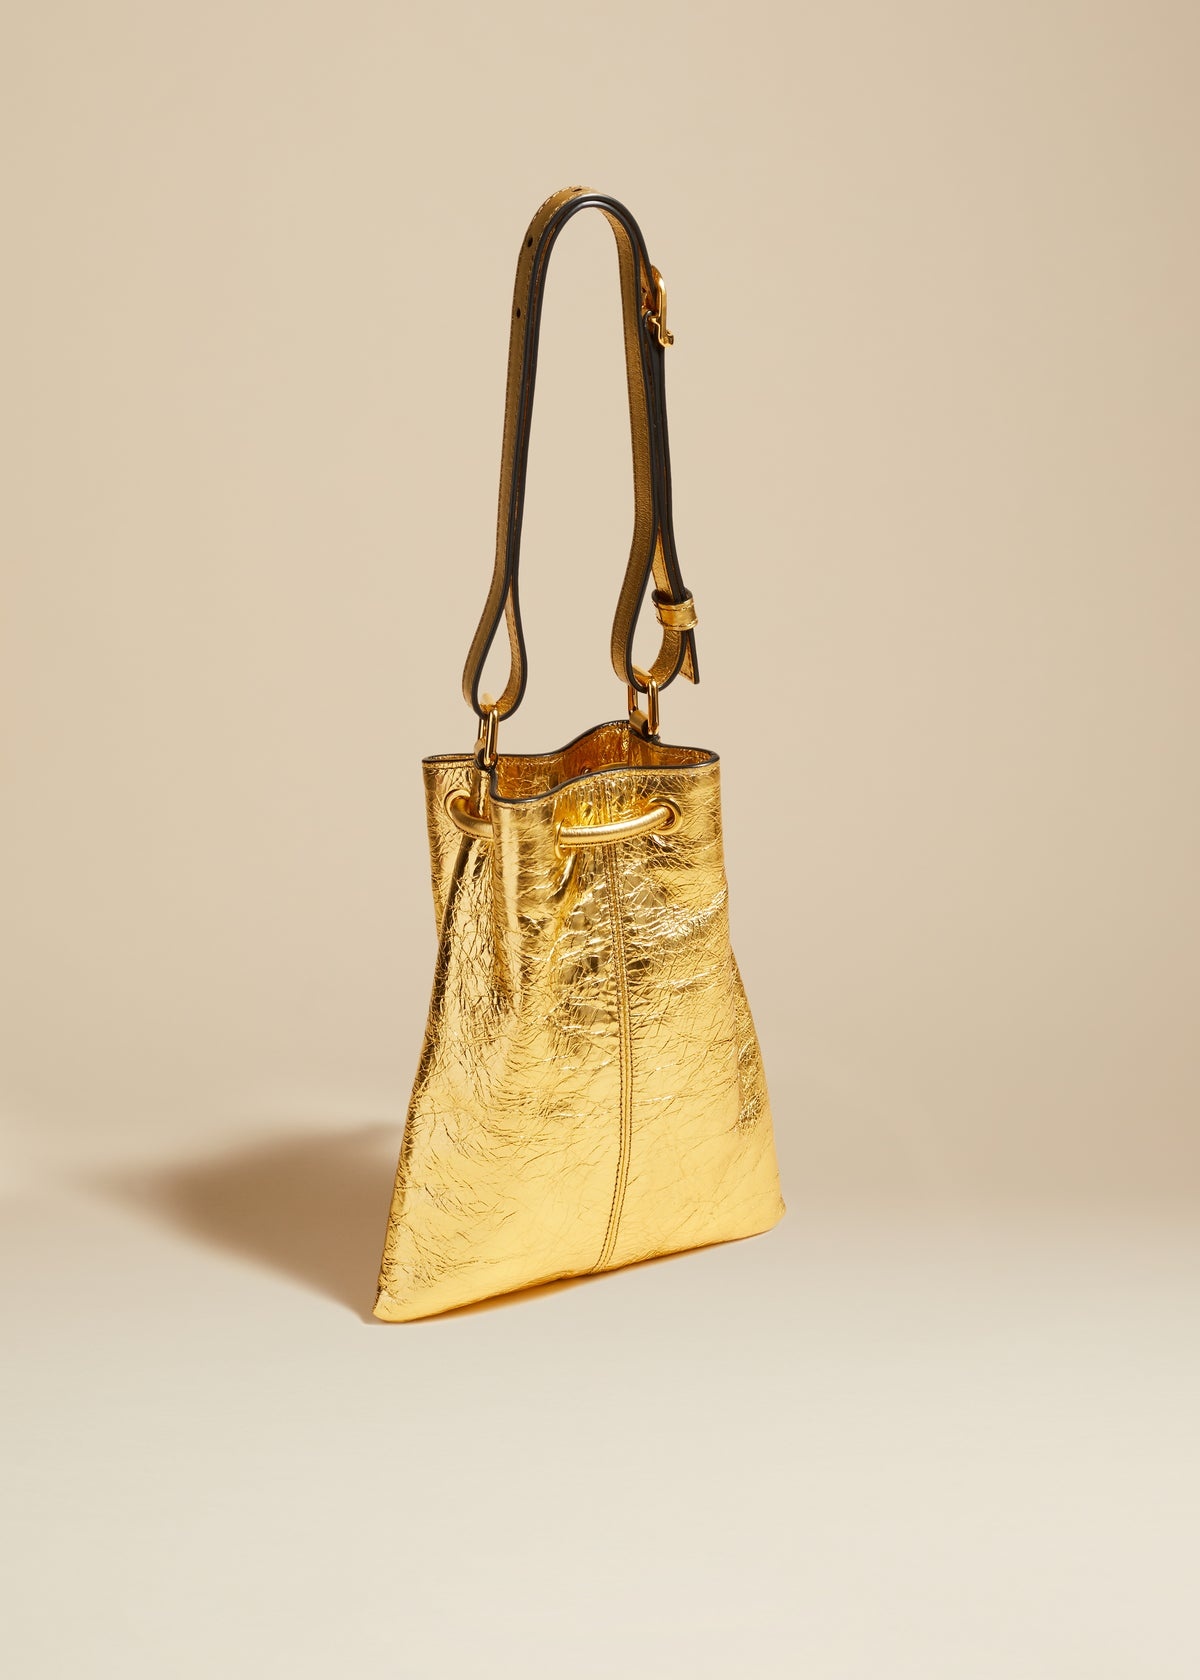 The Small Greta Bag in Gold Metallic Leather - 2